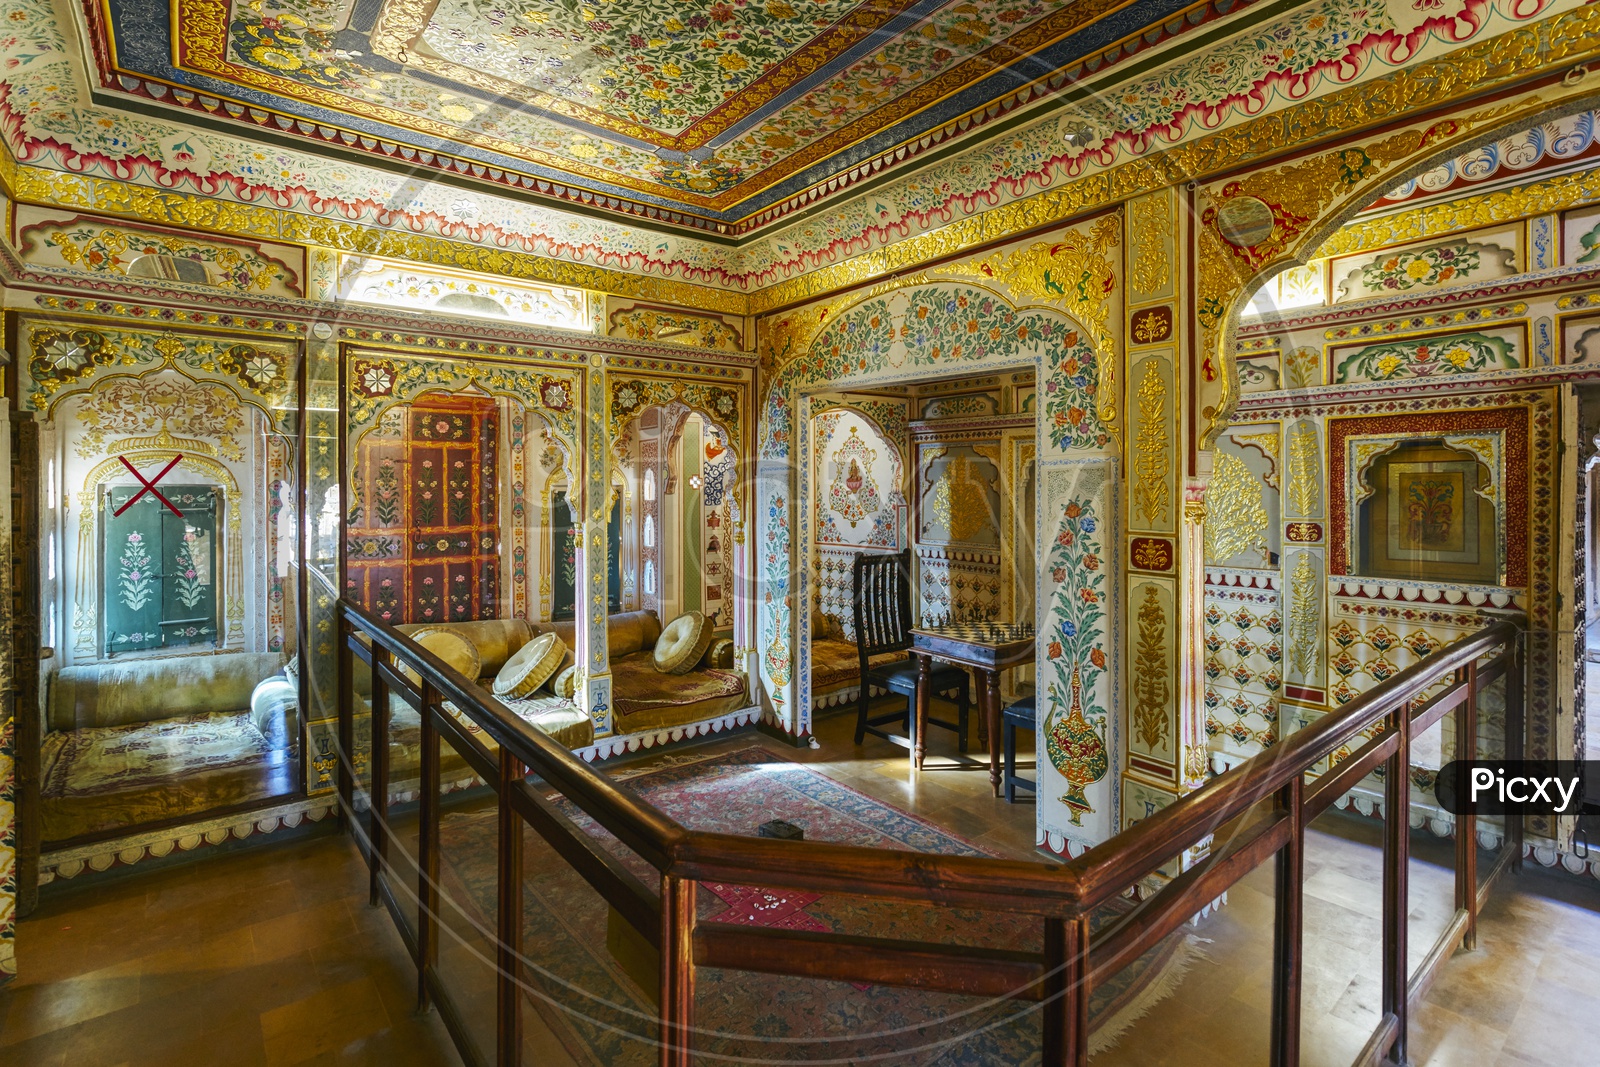 Inside Patwon Ki Haveli, Jaisalmer